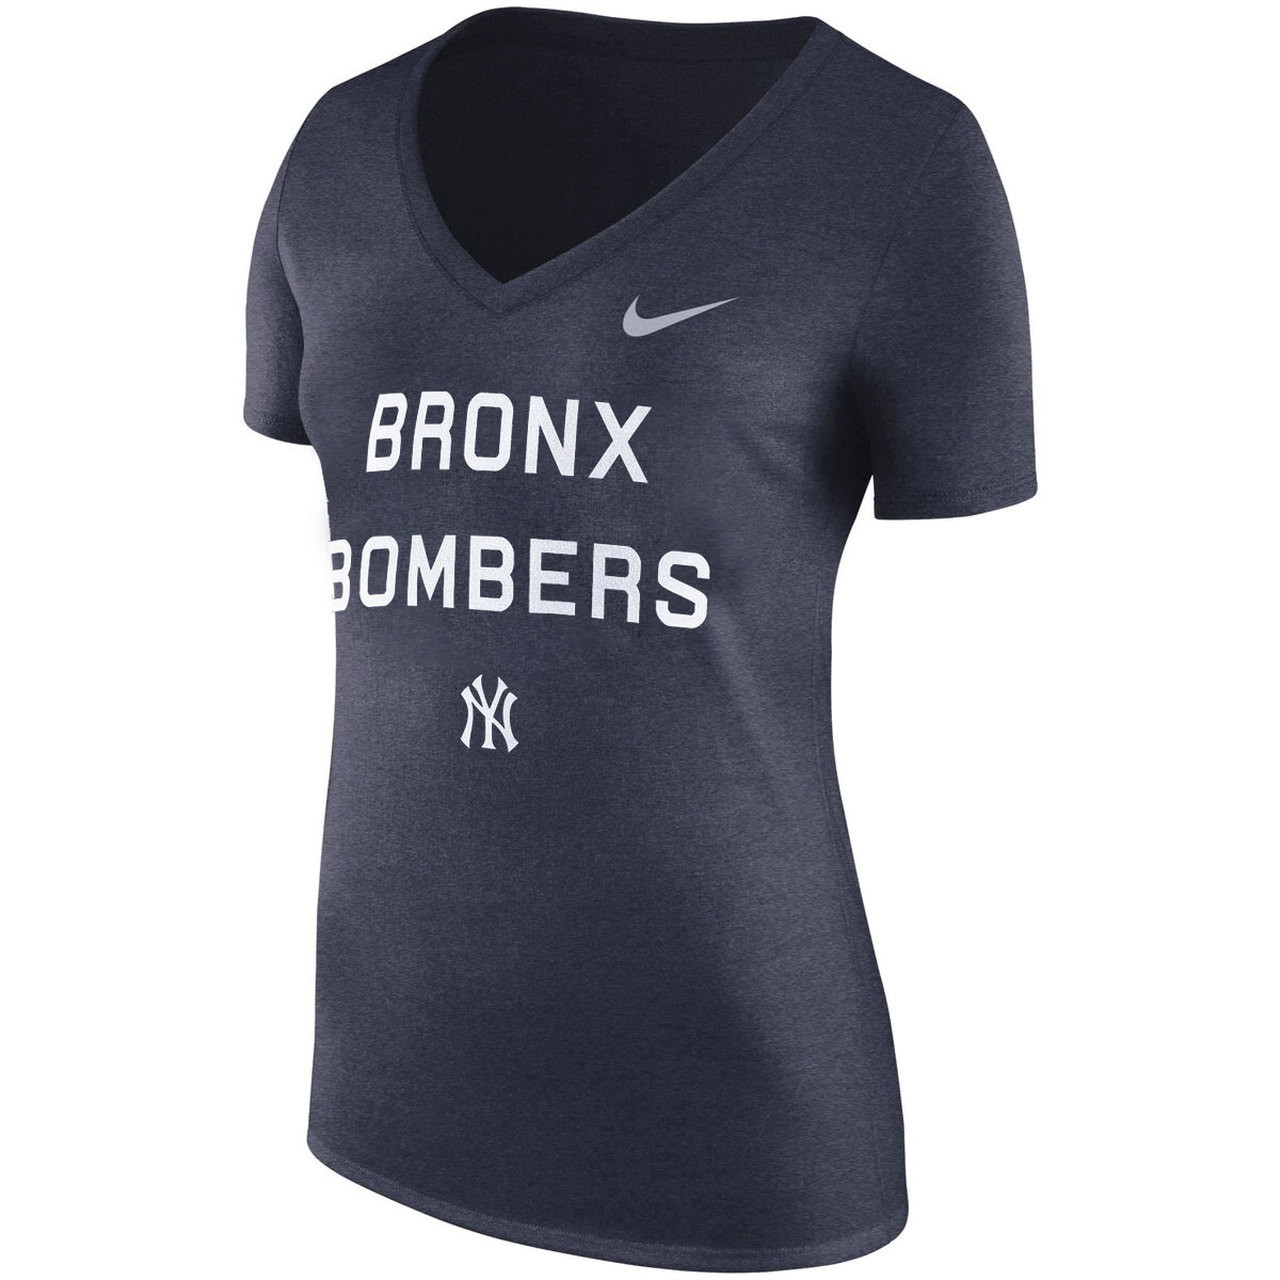 Women's New York Nike Bronx Bombers Tri-Blend Shirt